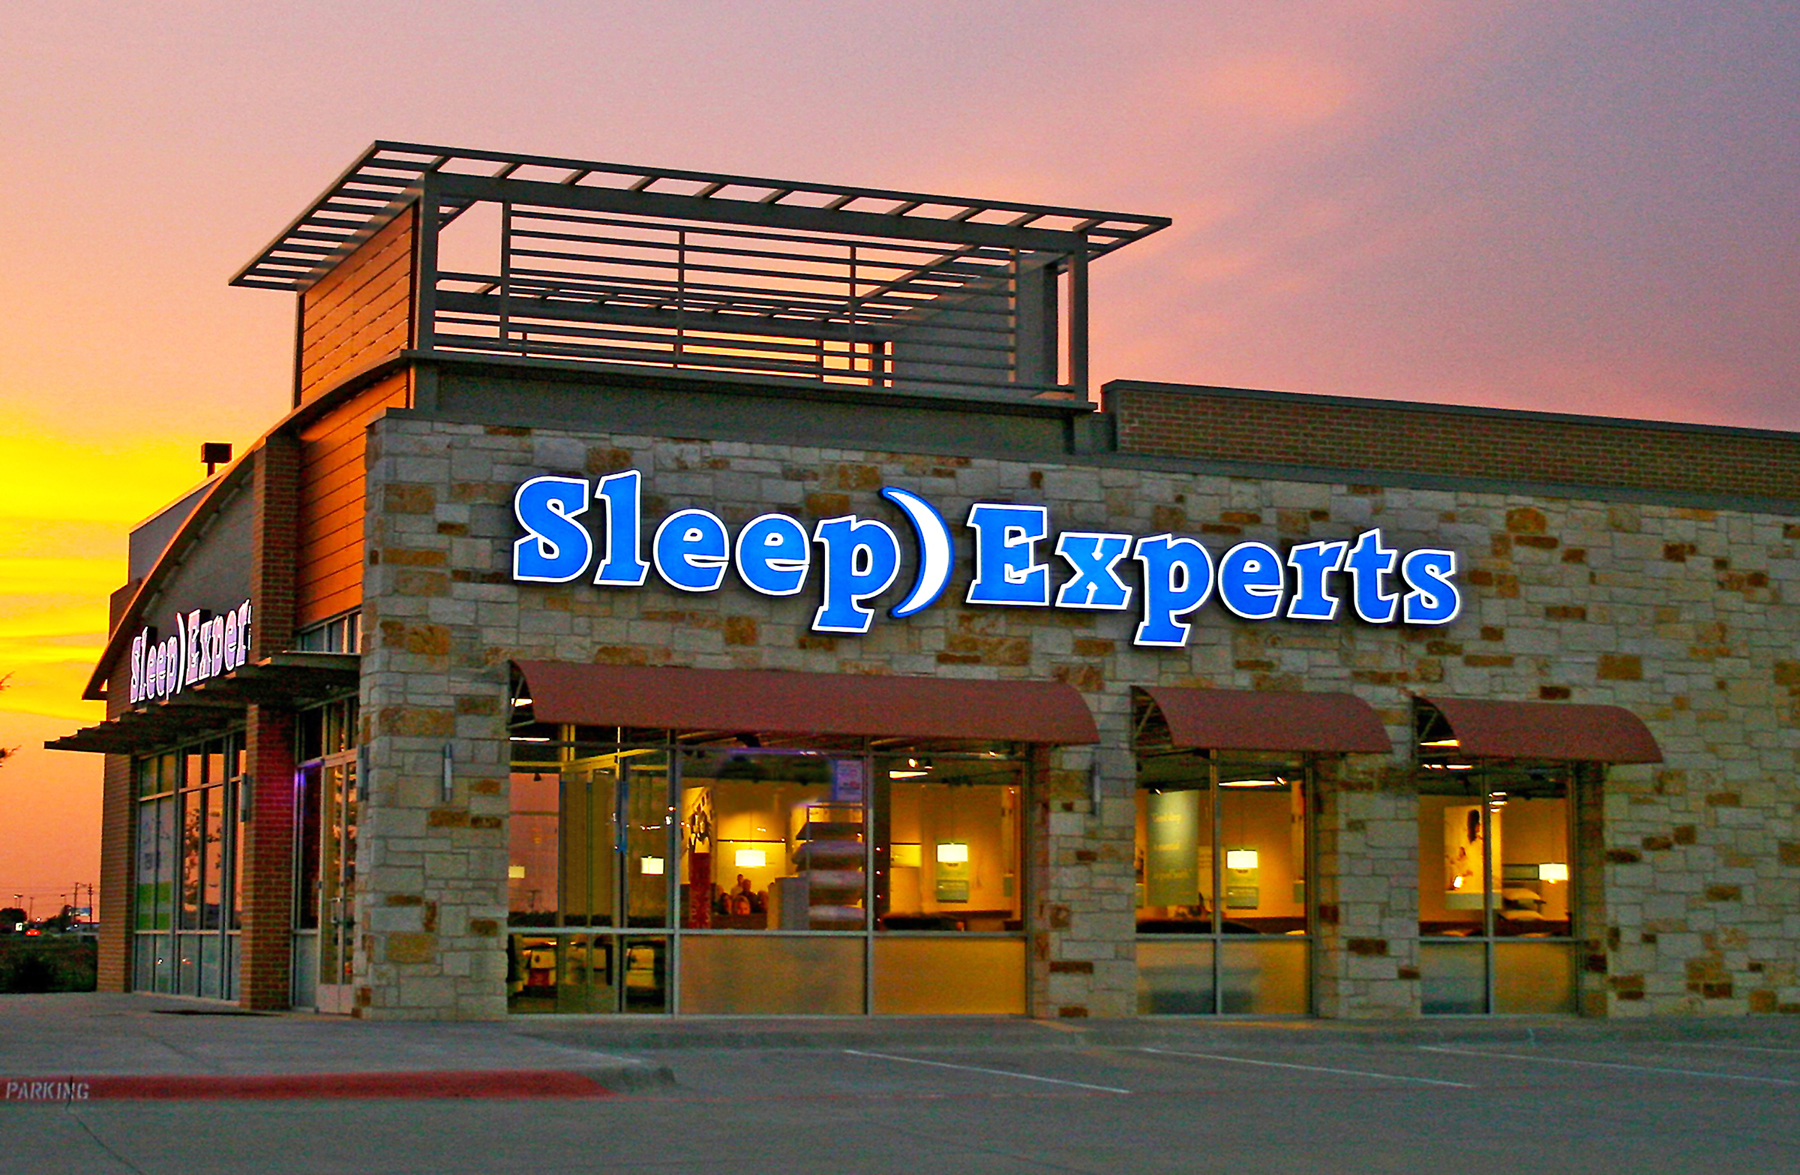 mattress firm buys sleep experts